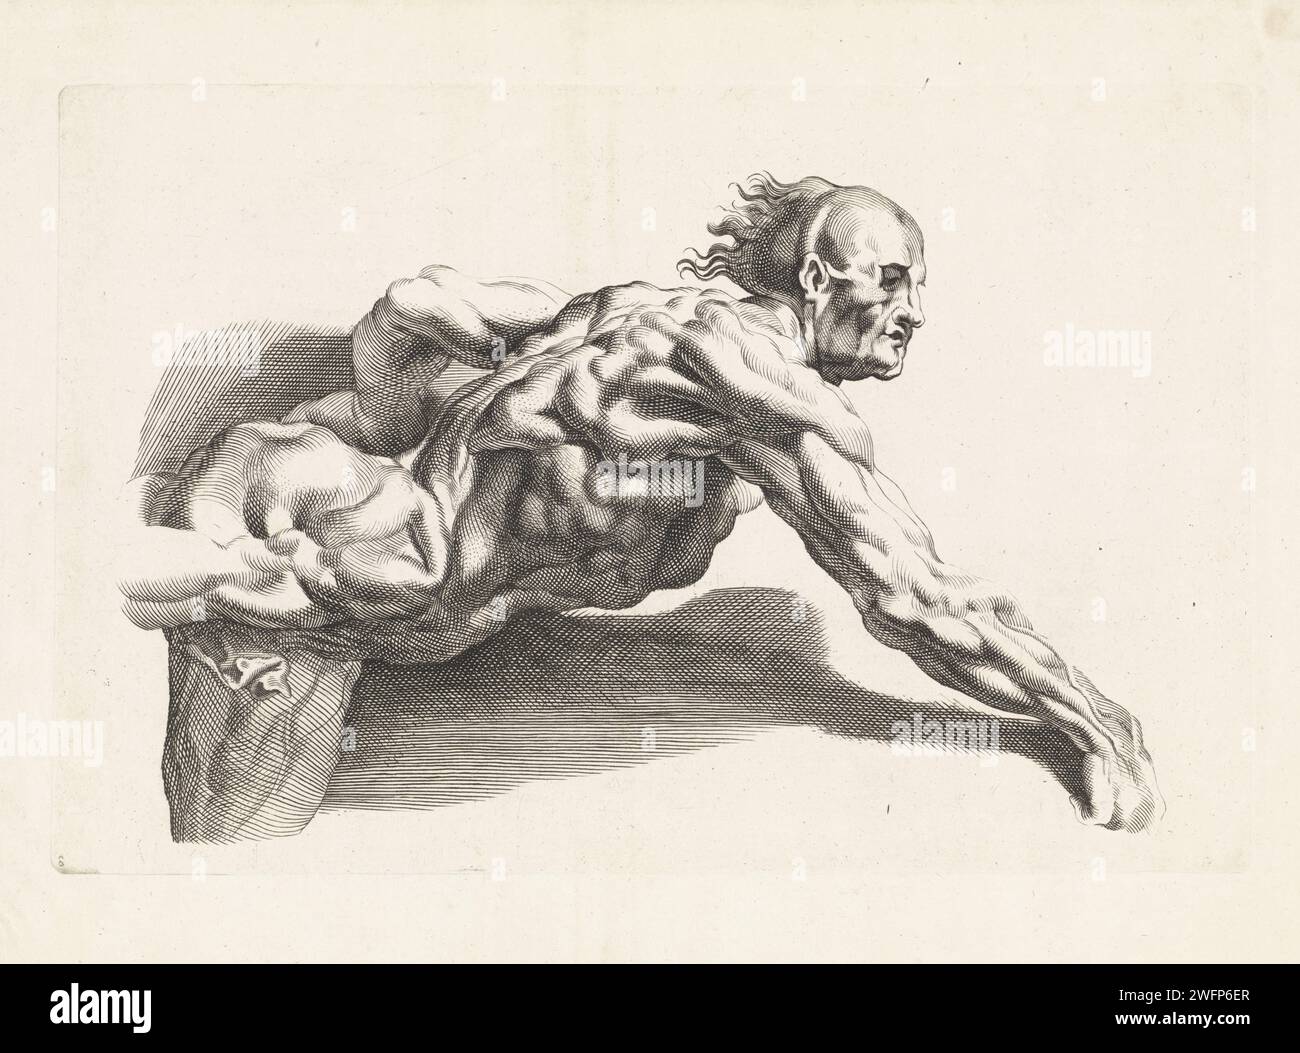 Anatomische Studie des angelehnten Menschen, Paulus Pontius, nach Peter Paul Rubens, 1616 - 1657 Druck Antwerpener Papier Gravur von Teilen des menschlichen Körpers (Skelett ausgenommen) Stockfoto